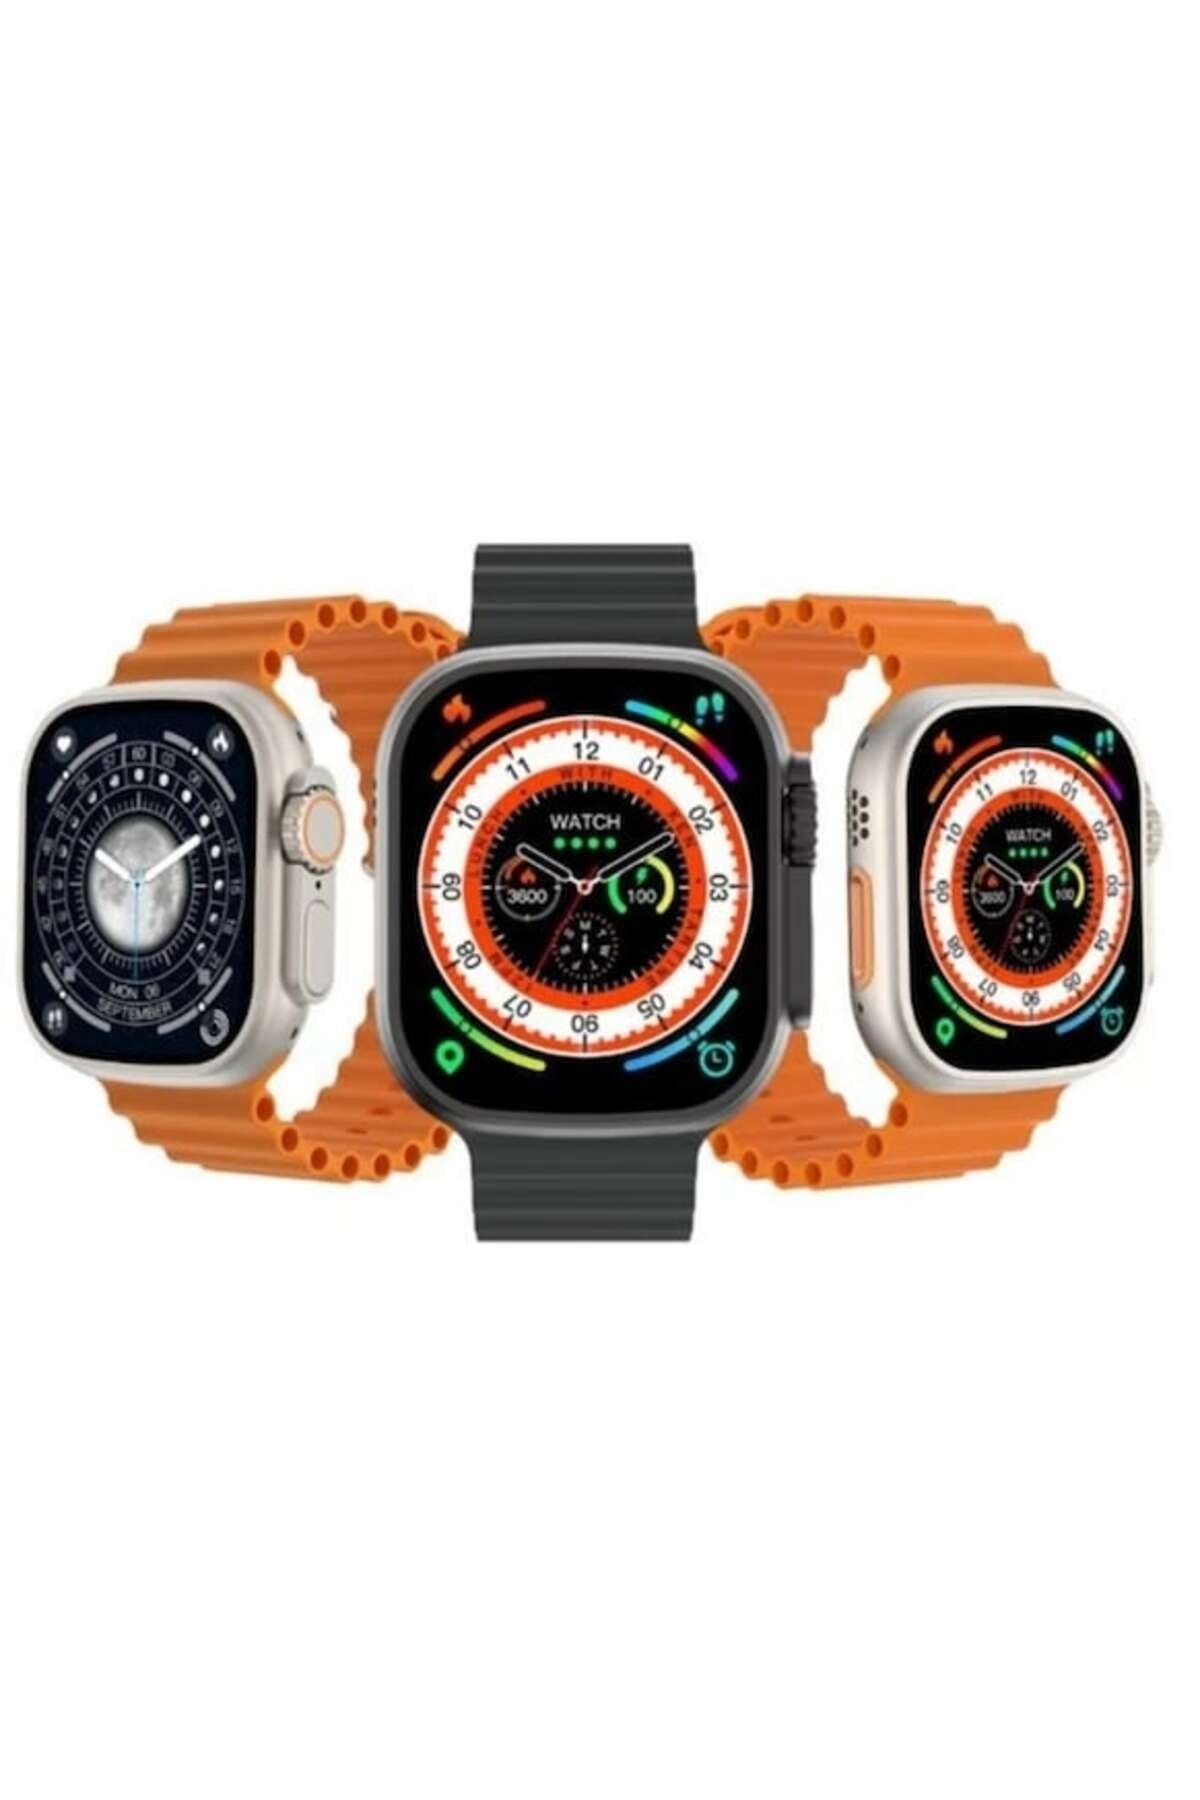 NS Store Smart Watch Ultra Plus S8 Ultra Max 49Mm 2.08 Inc 2023 Akıllı Saat  Fiyatı, Yorumları - Trendyol